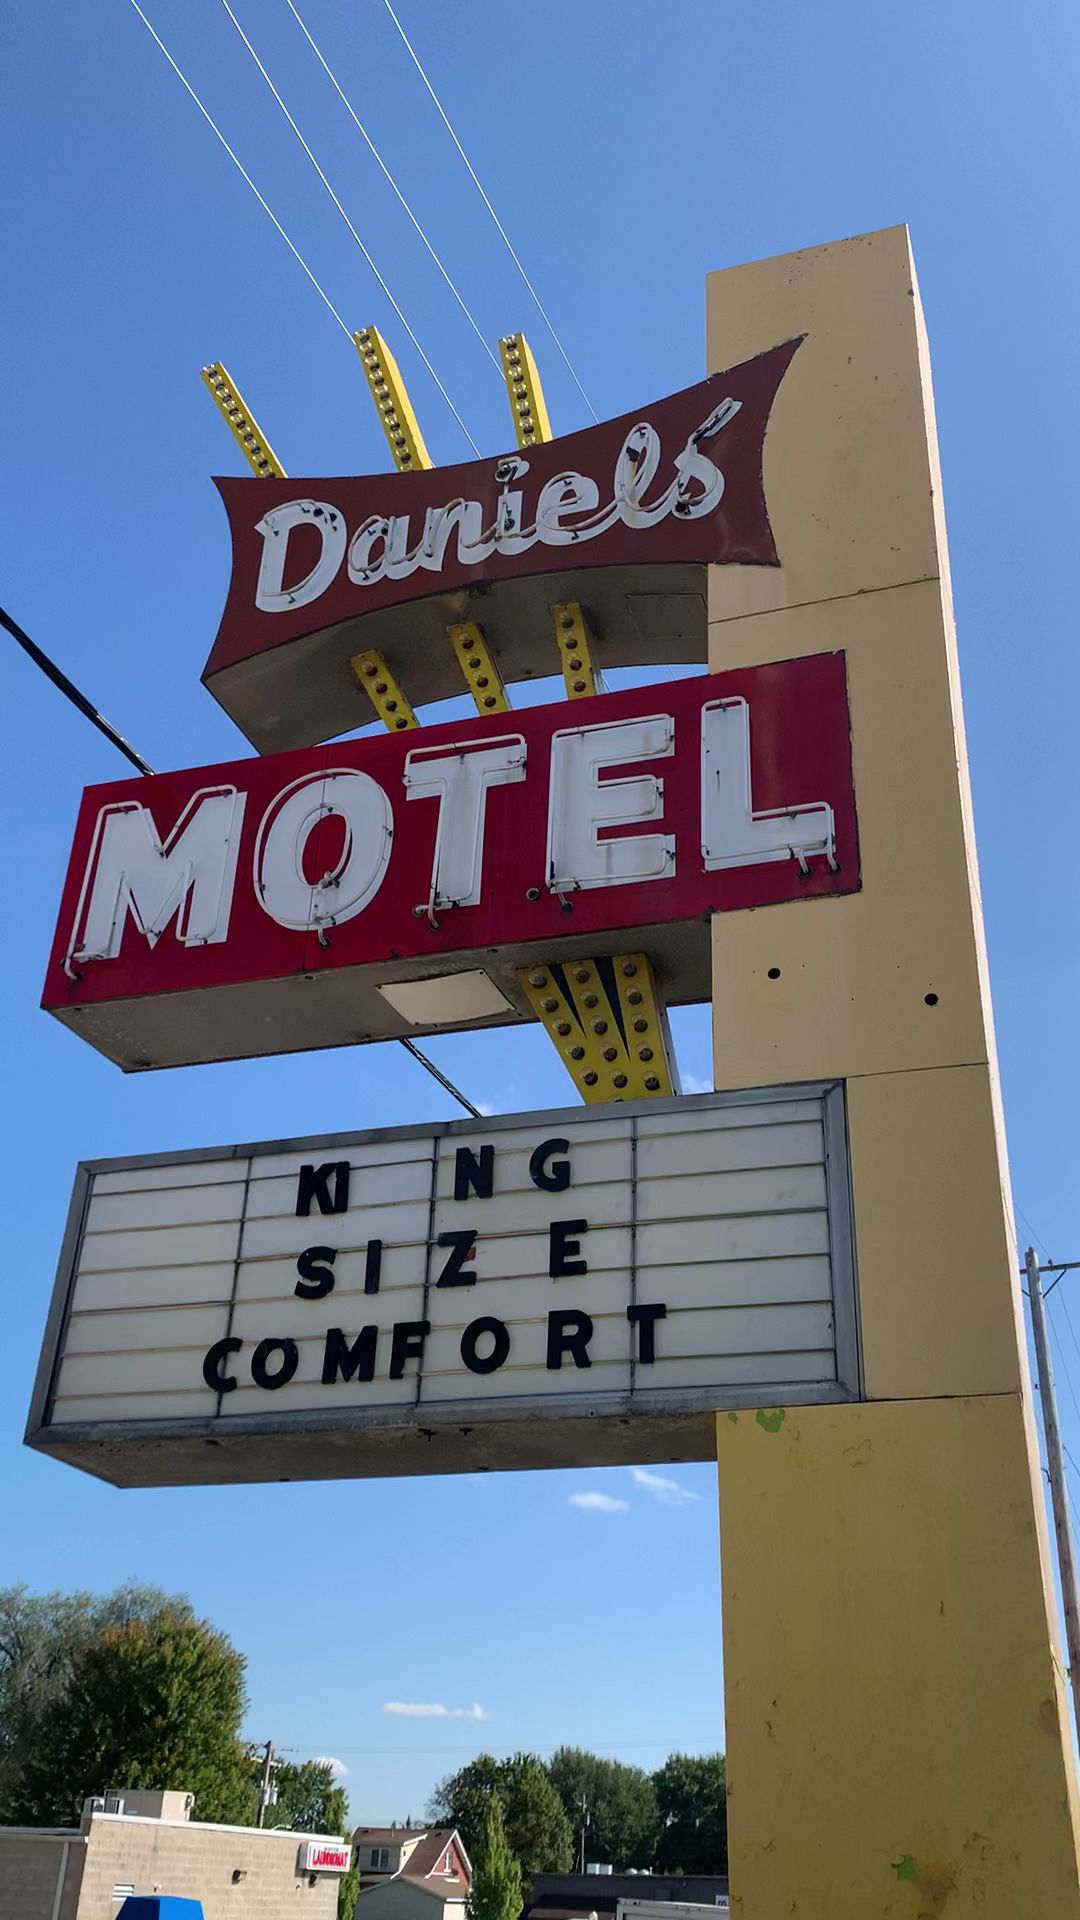 The Daniels Motel